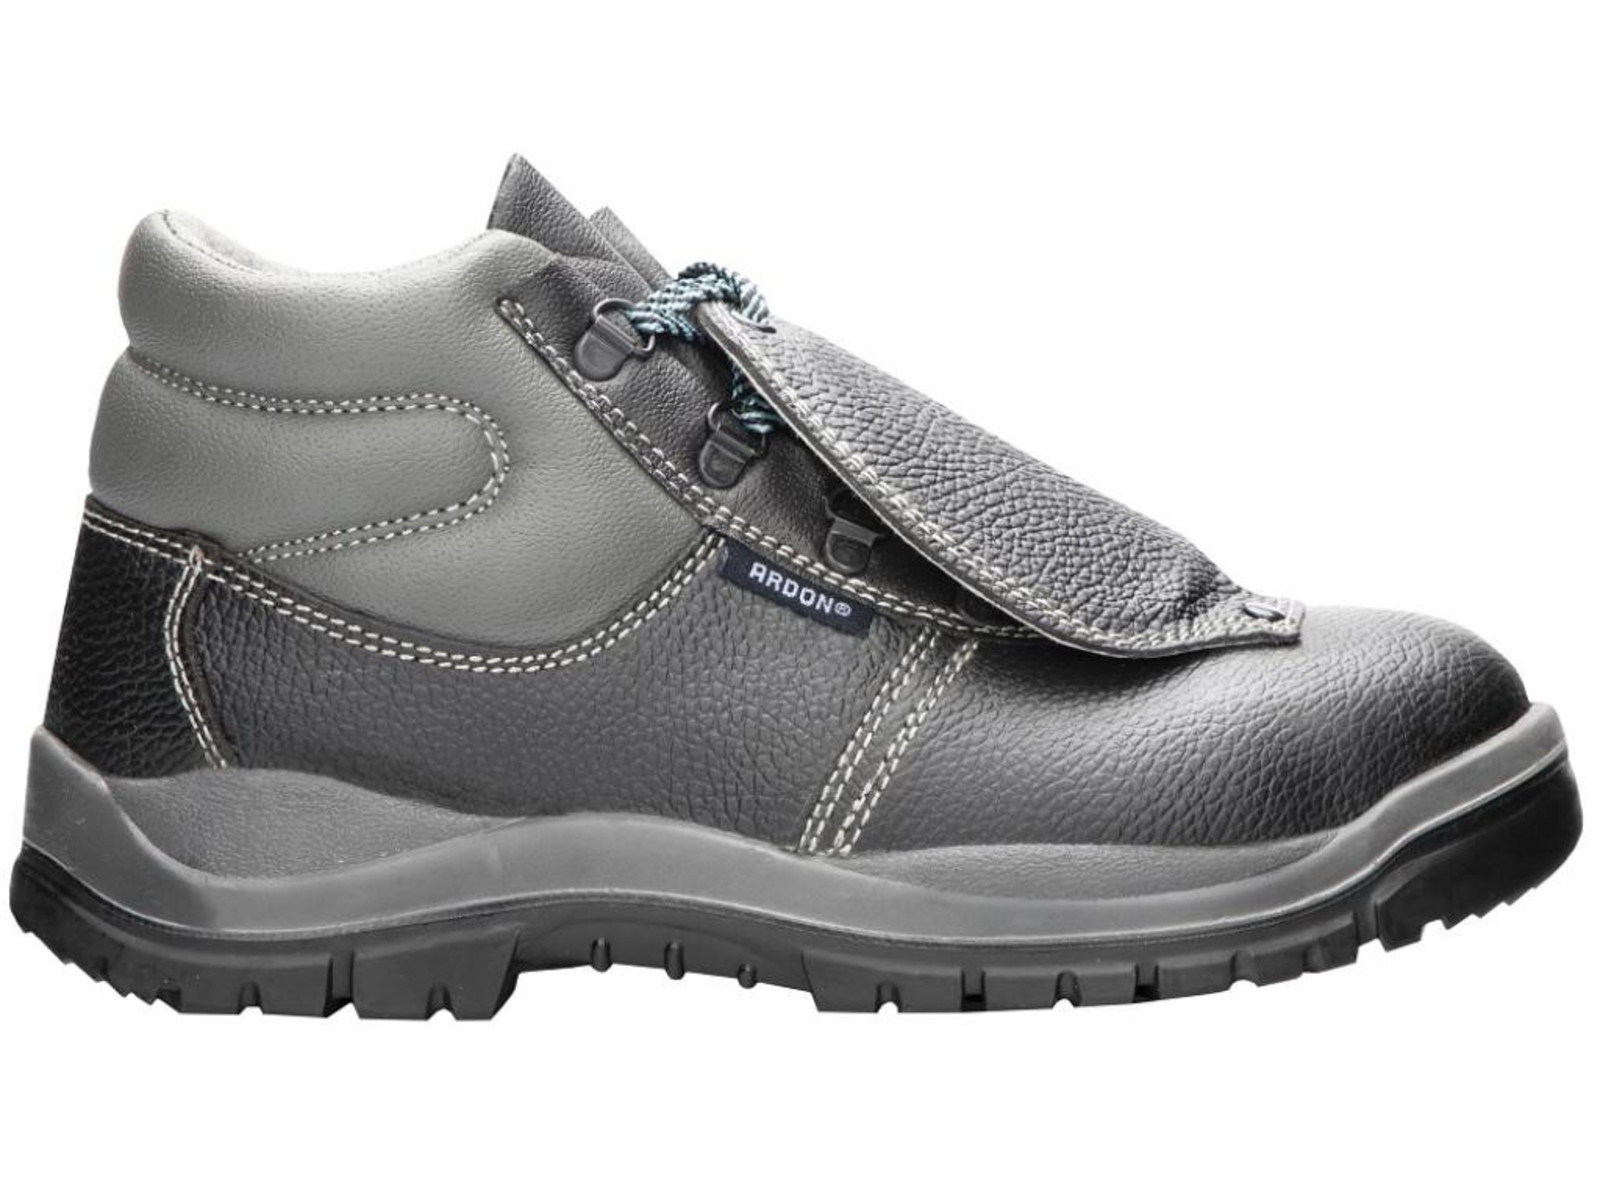 Bezpečnostná obuv ARDON® Integral S1P - veľkosť: 48, farba: sivá/čierna